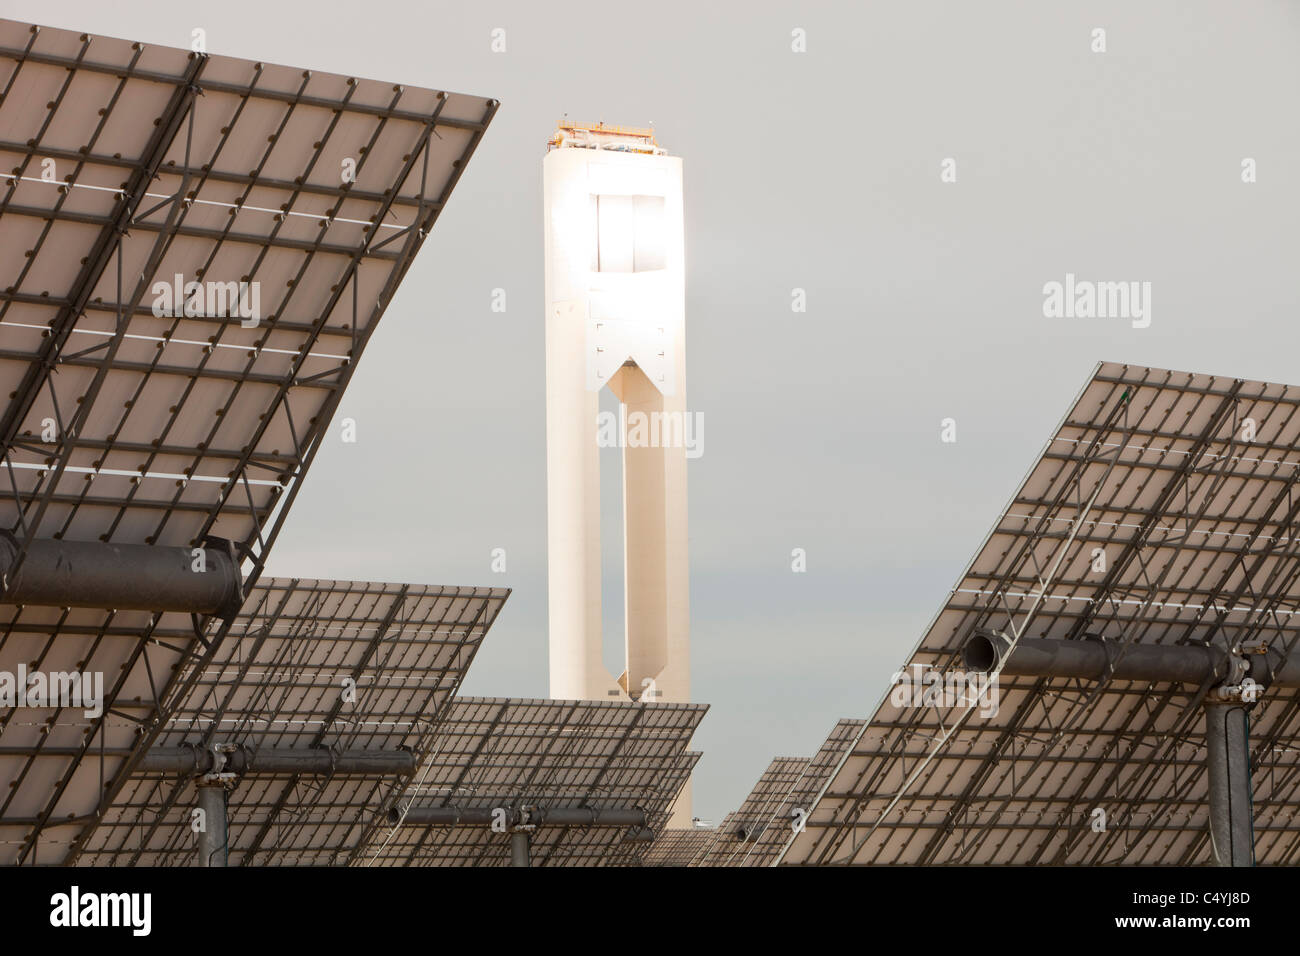 Heliostats, grandi specchi riflettenti dirigendo la luce del sole per la PS20 solare termico tower, Foto Stock